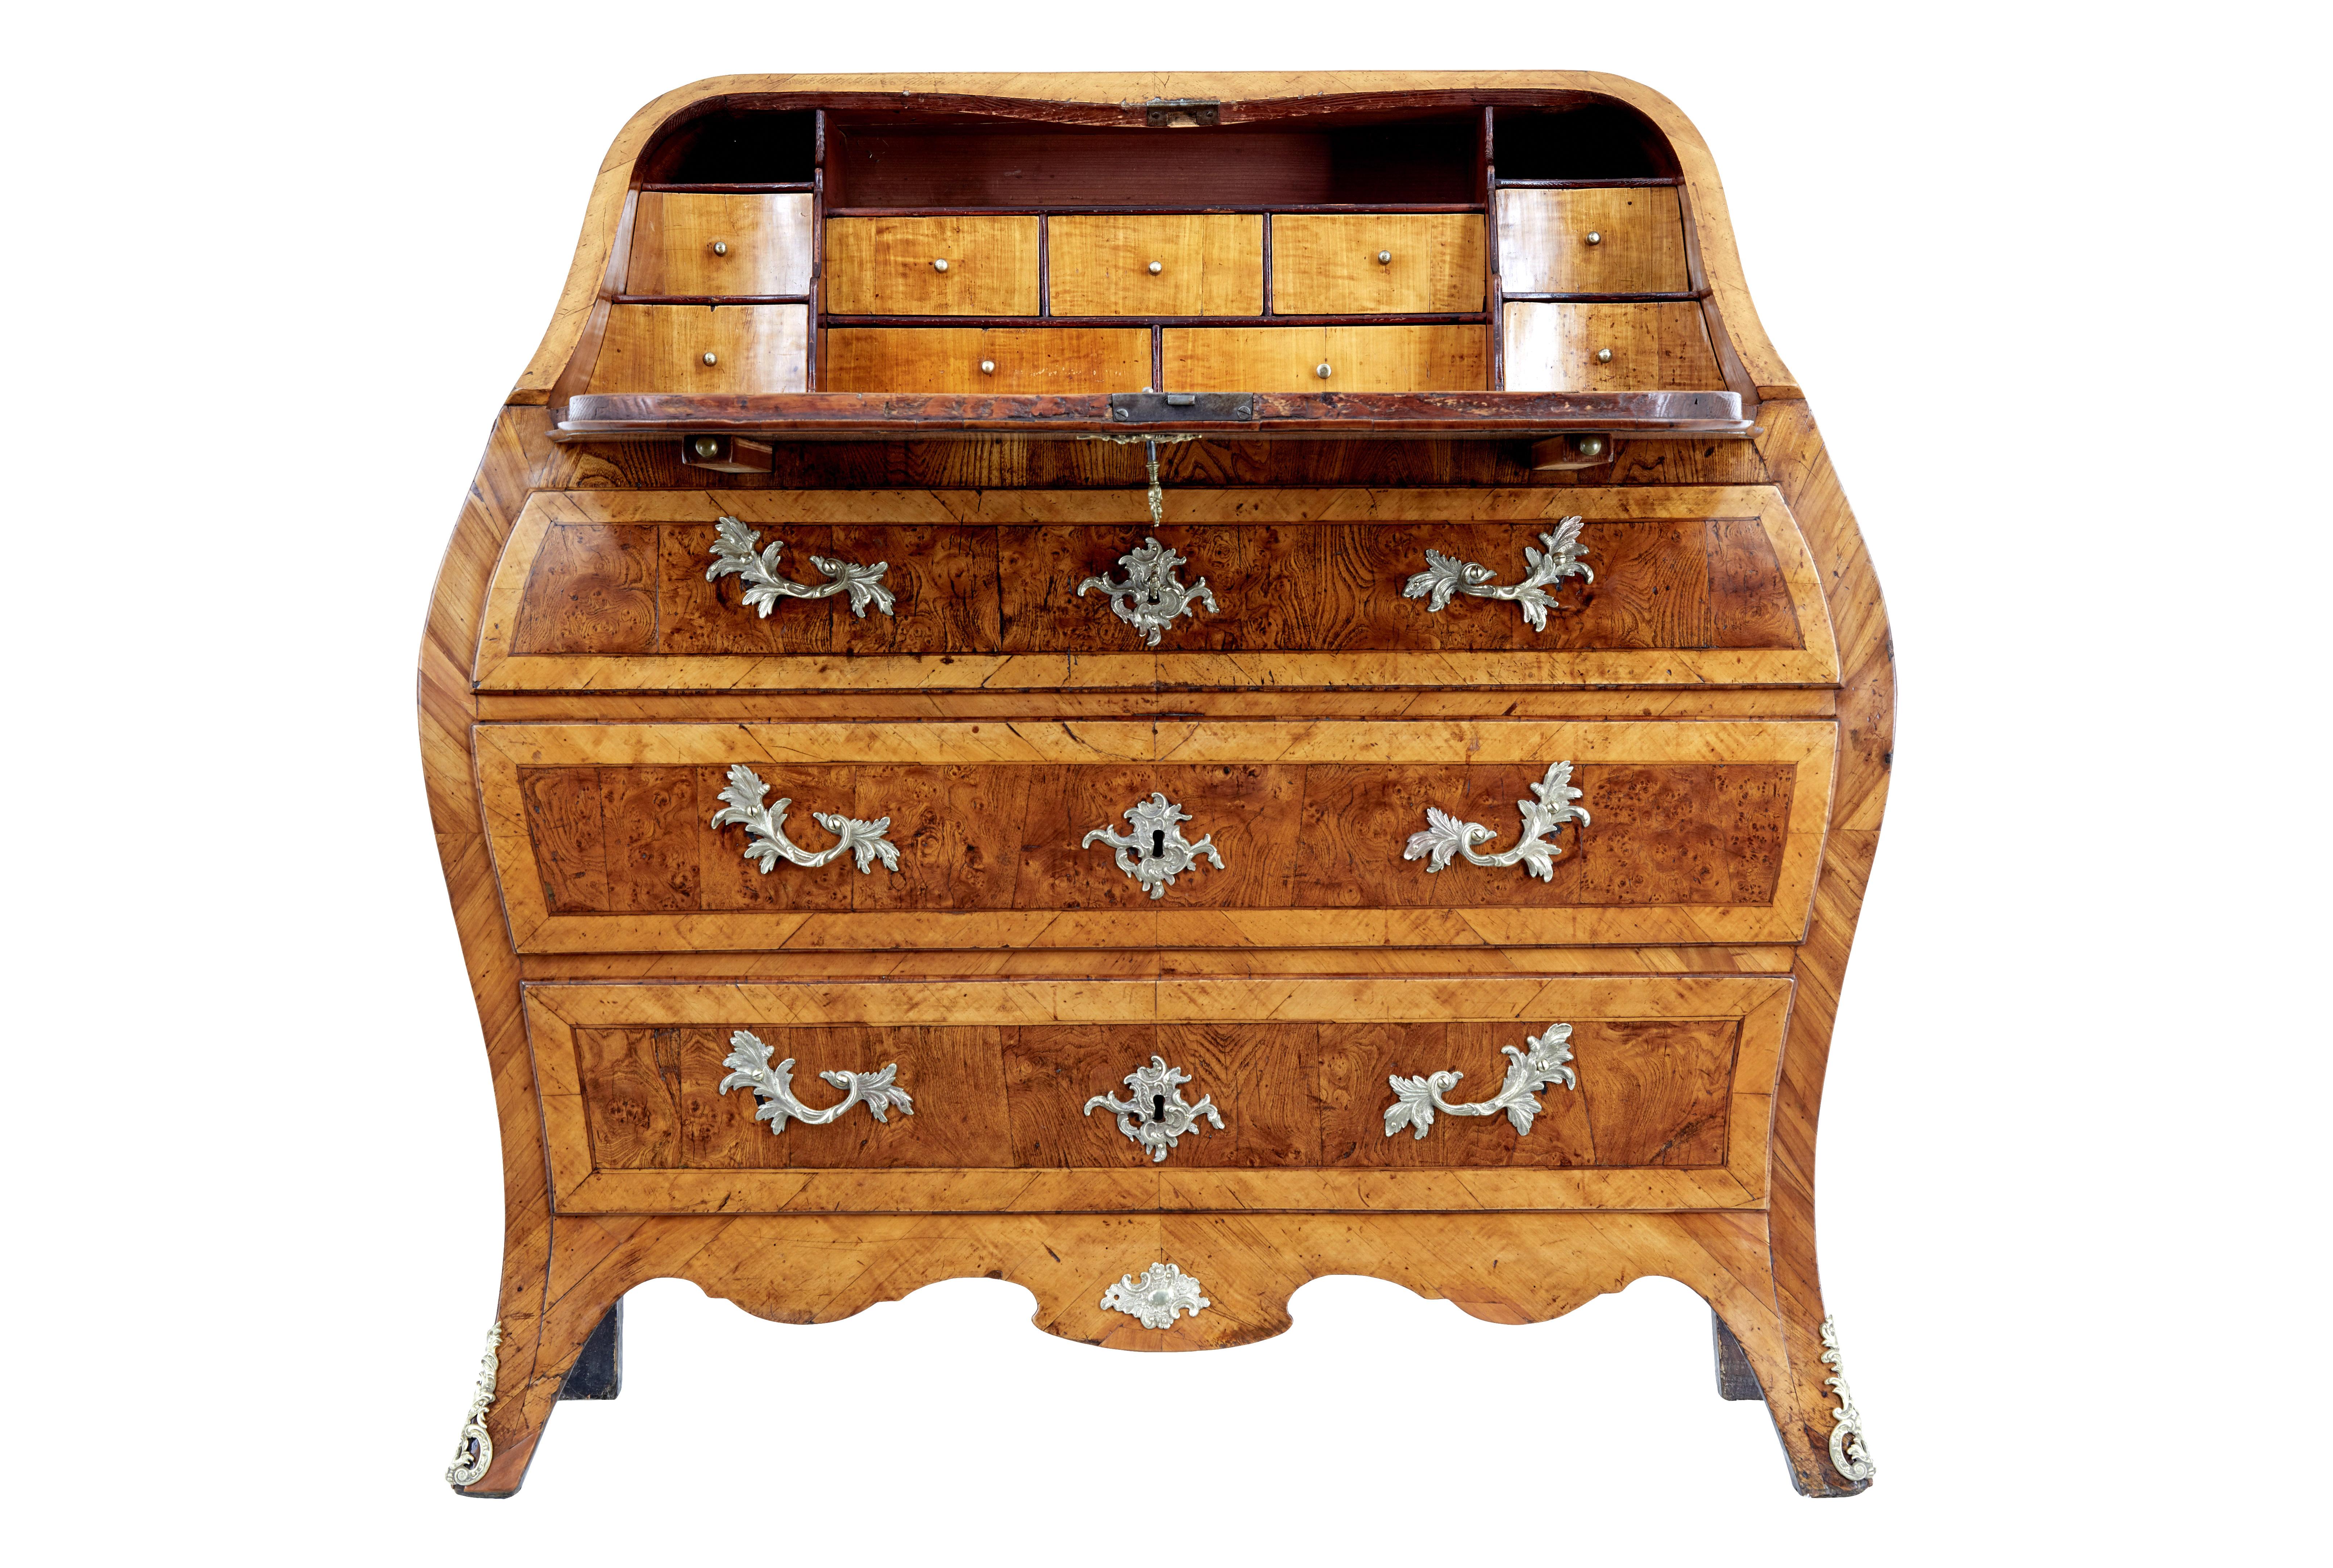 Rokoko-Schreibtisch aus Eibe und Ulme, 18. Jahrhundert, um 1750.

Wunderschöne schwedische Kommode in Form einer Bombe aus dem Rokoko.   Wunderschön aus Eiben- und Ulmenholz gefertigt, mit verschiedenen Techniken wie Parkettierung, Intarsien und